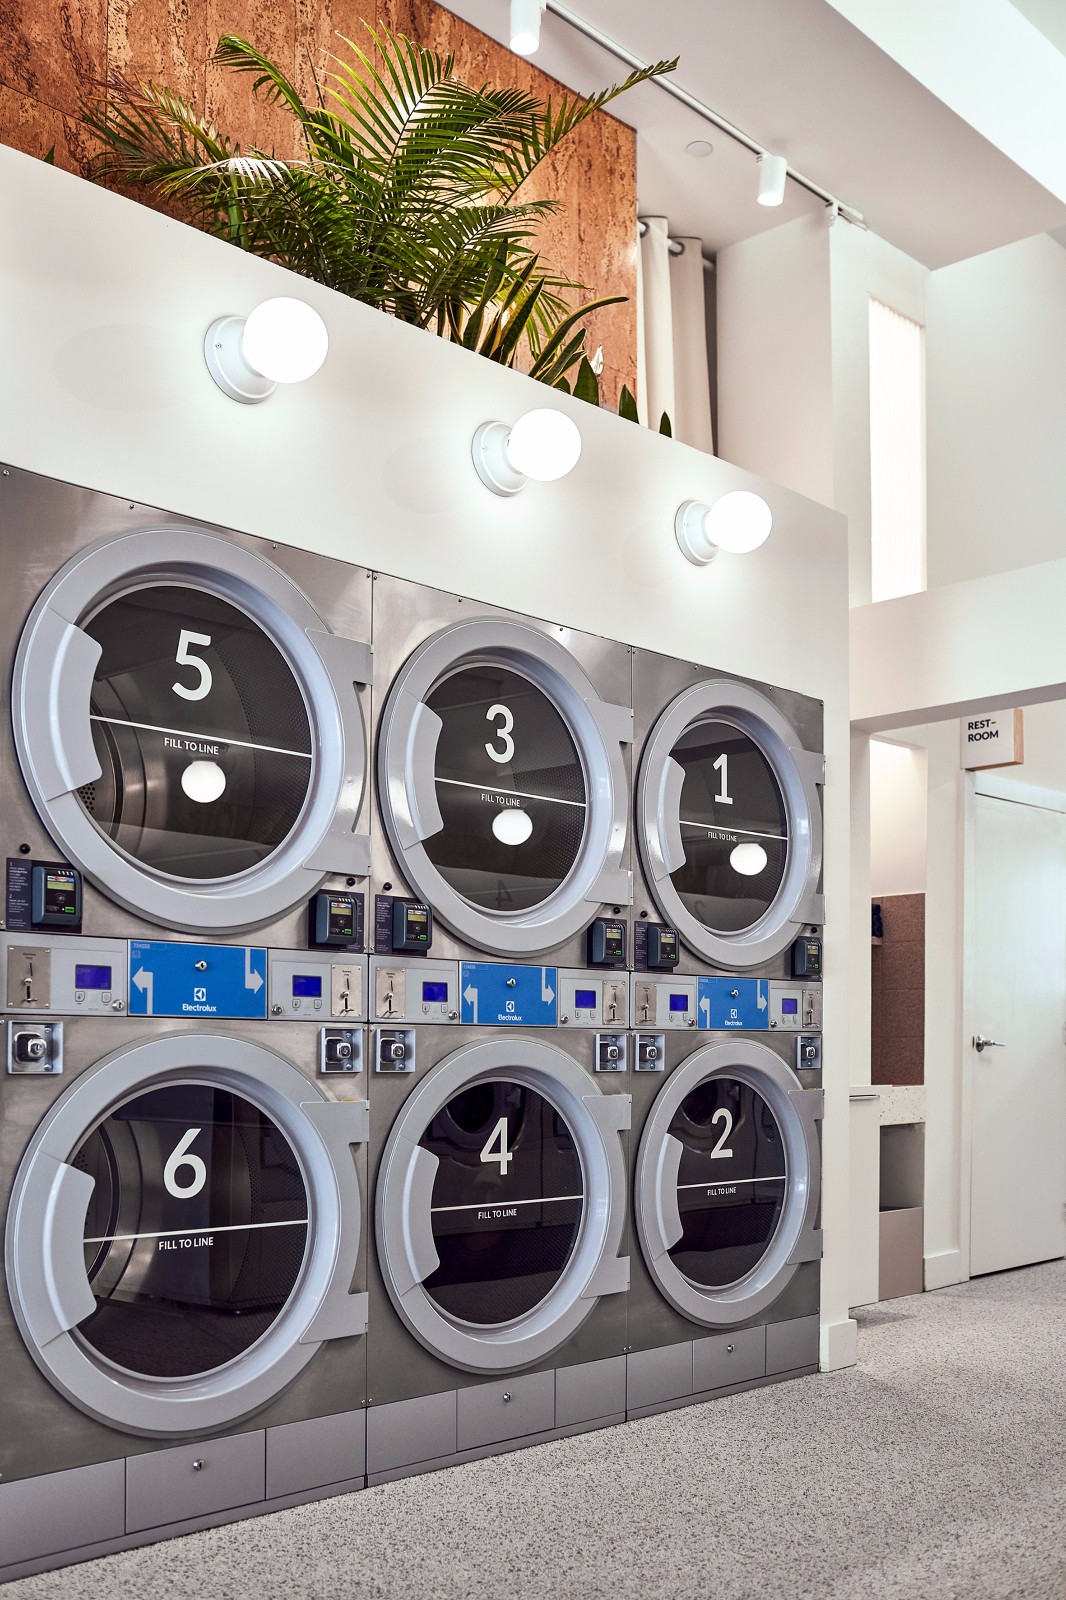 酒店自助洗衣房流程图片